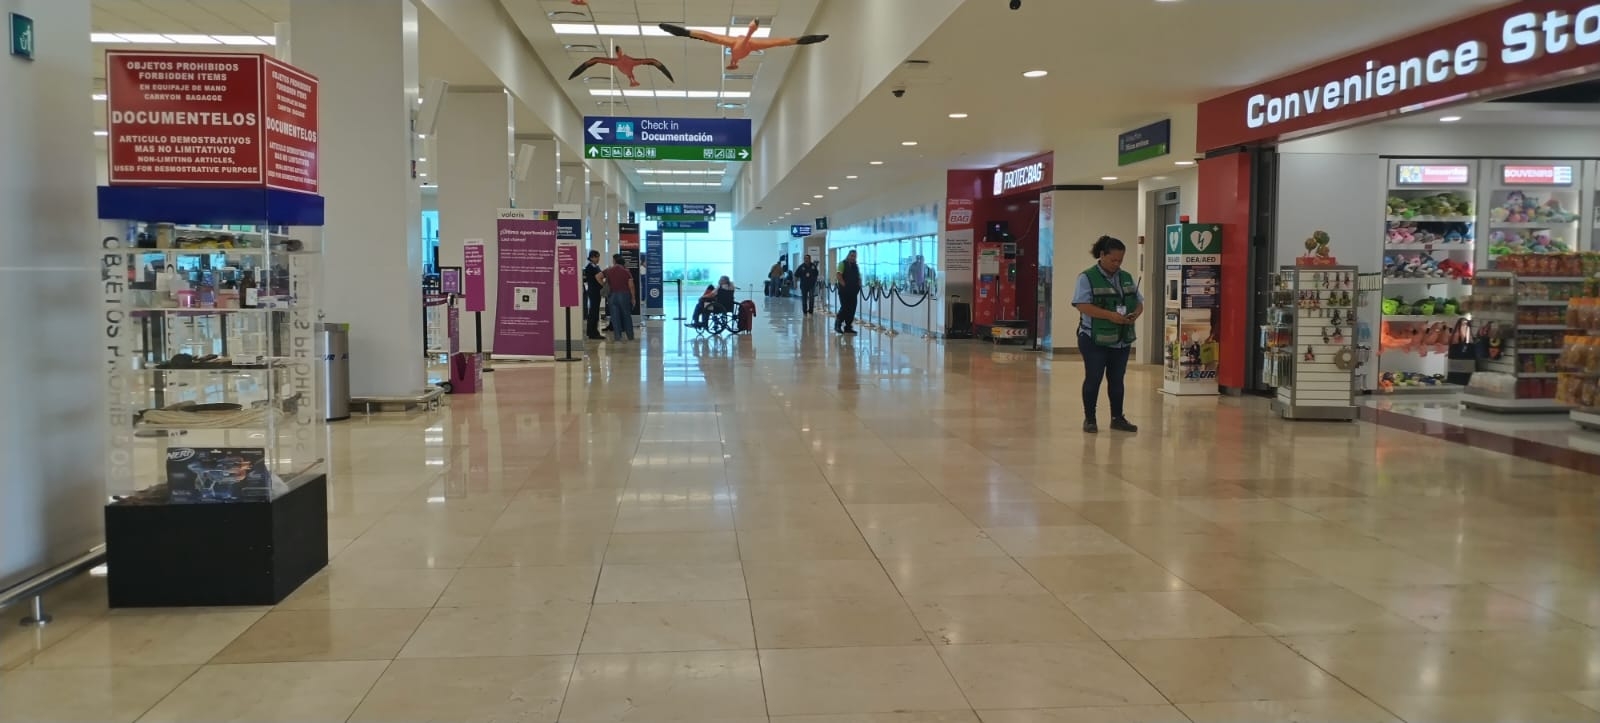 La afluencia en el aeropuerto de Mérida ha disminuido